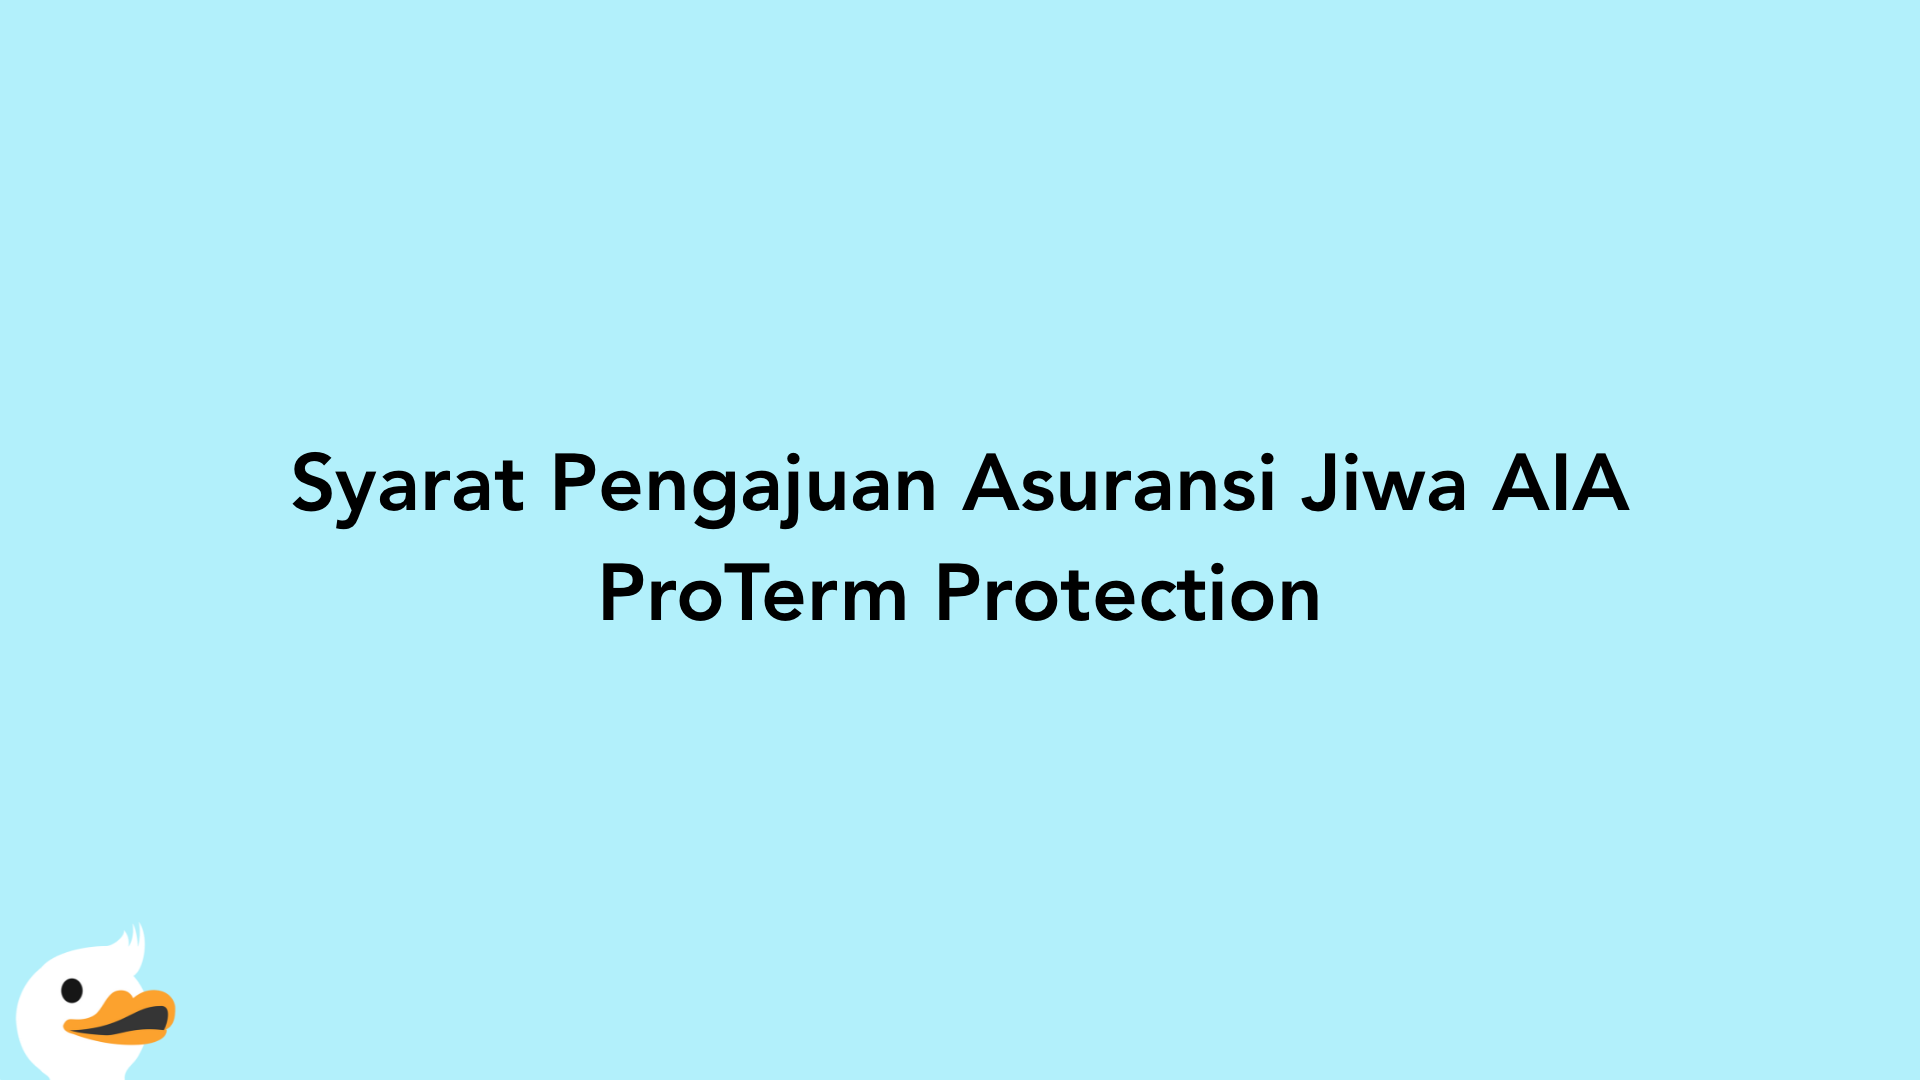 Syarat Pengajuan Asuransi Jiwa AIA ProTerm Protection